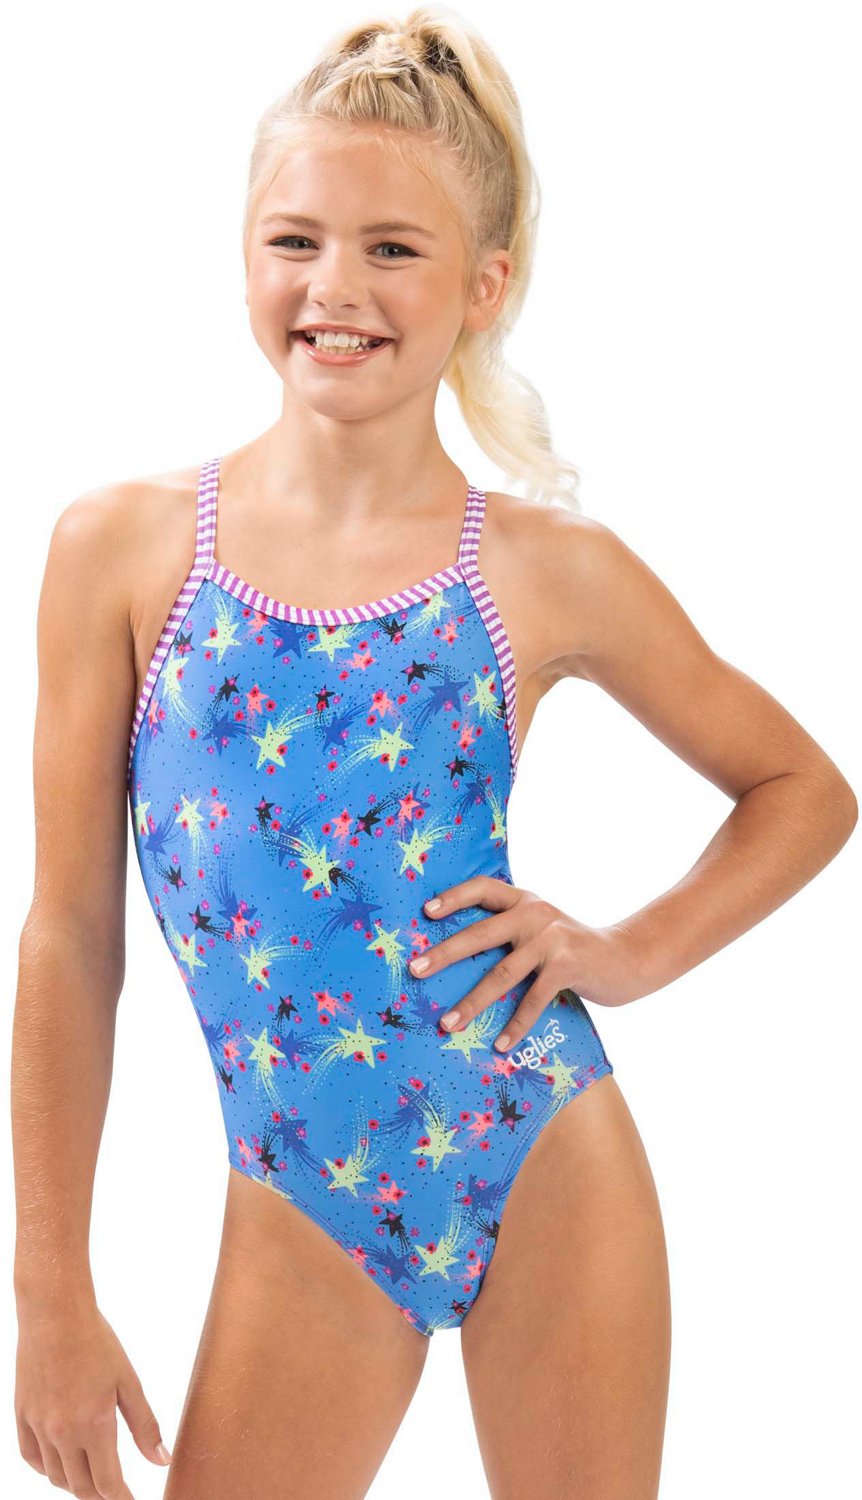 Kids Cartoon Swimwear One Piece Training Swimsuit Teen Bathing Suit Girls  Rash Guard Floating Swimsuit Sports Wear For Kids